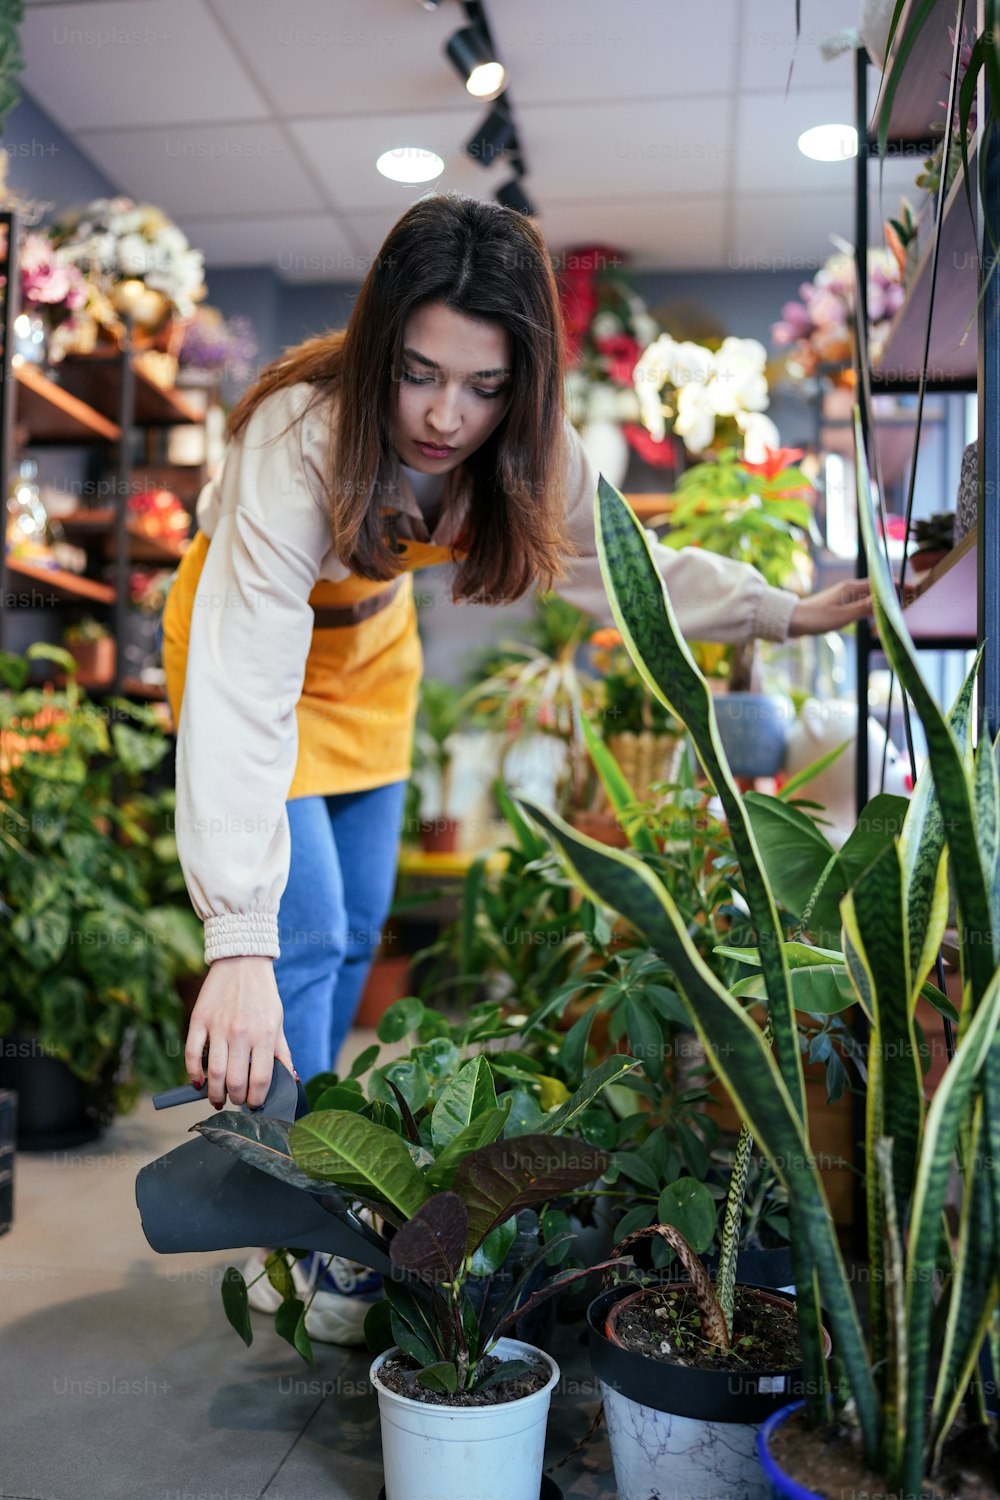 꽃집에서 식물을 보고 있는 여자